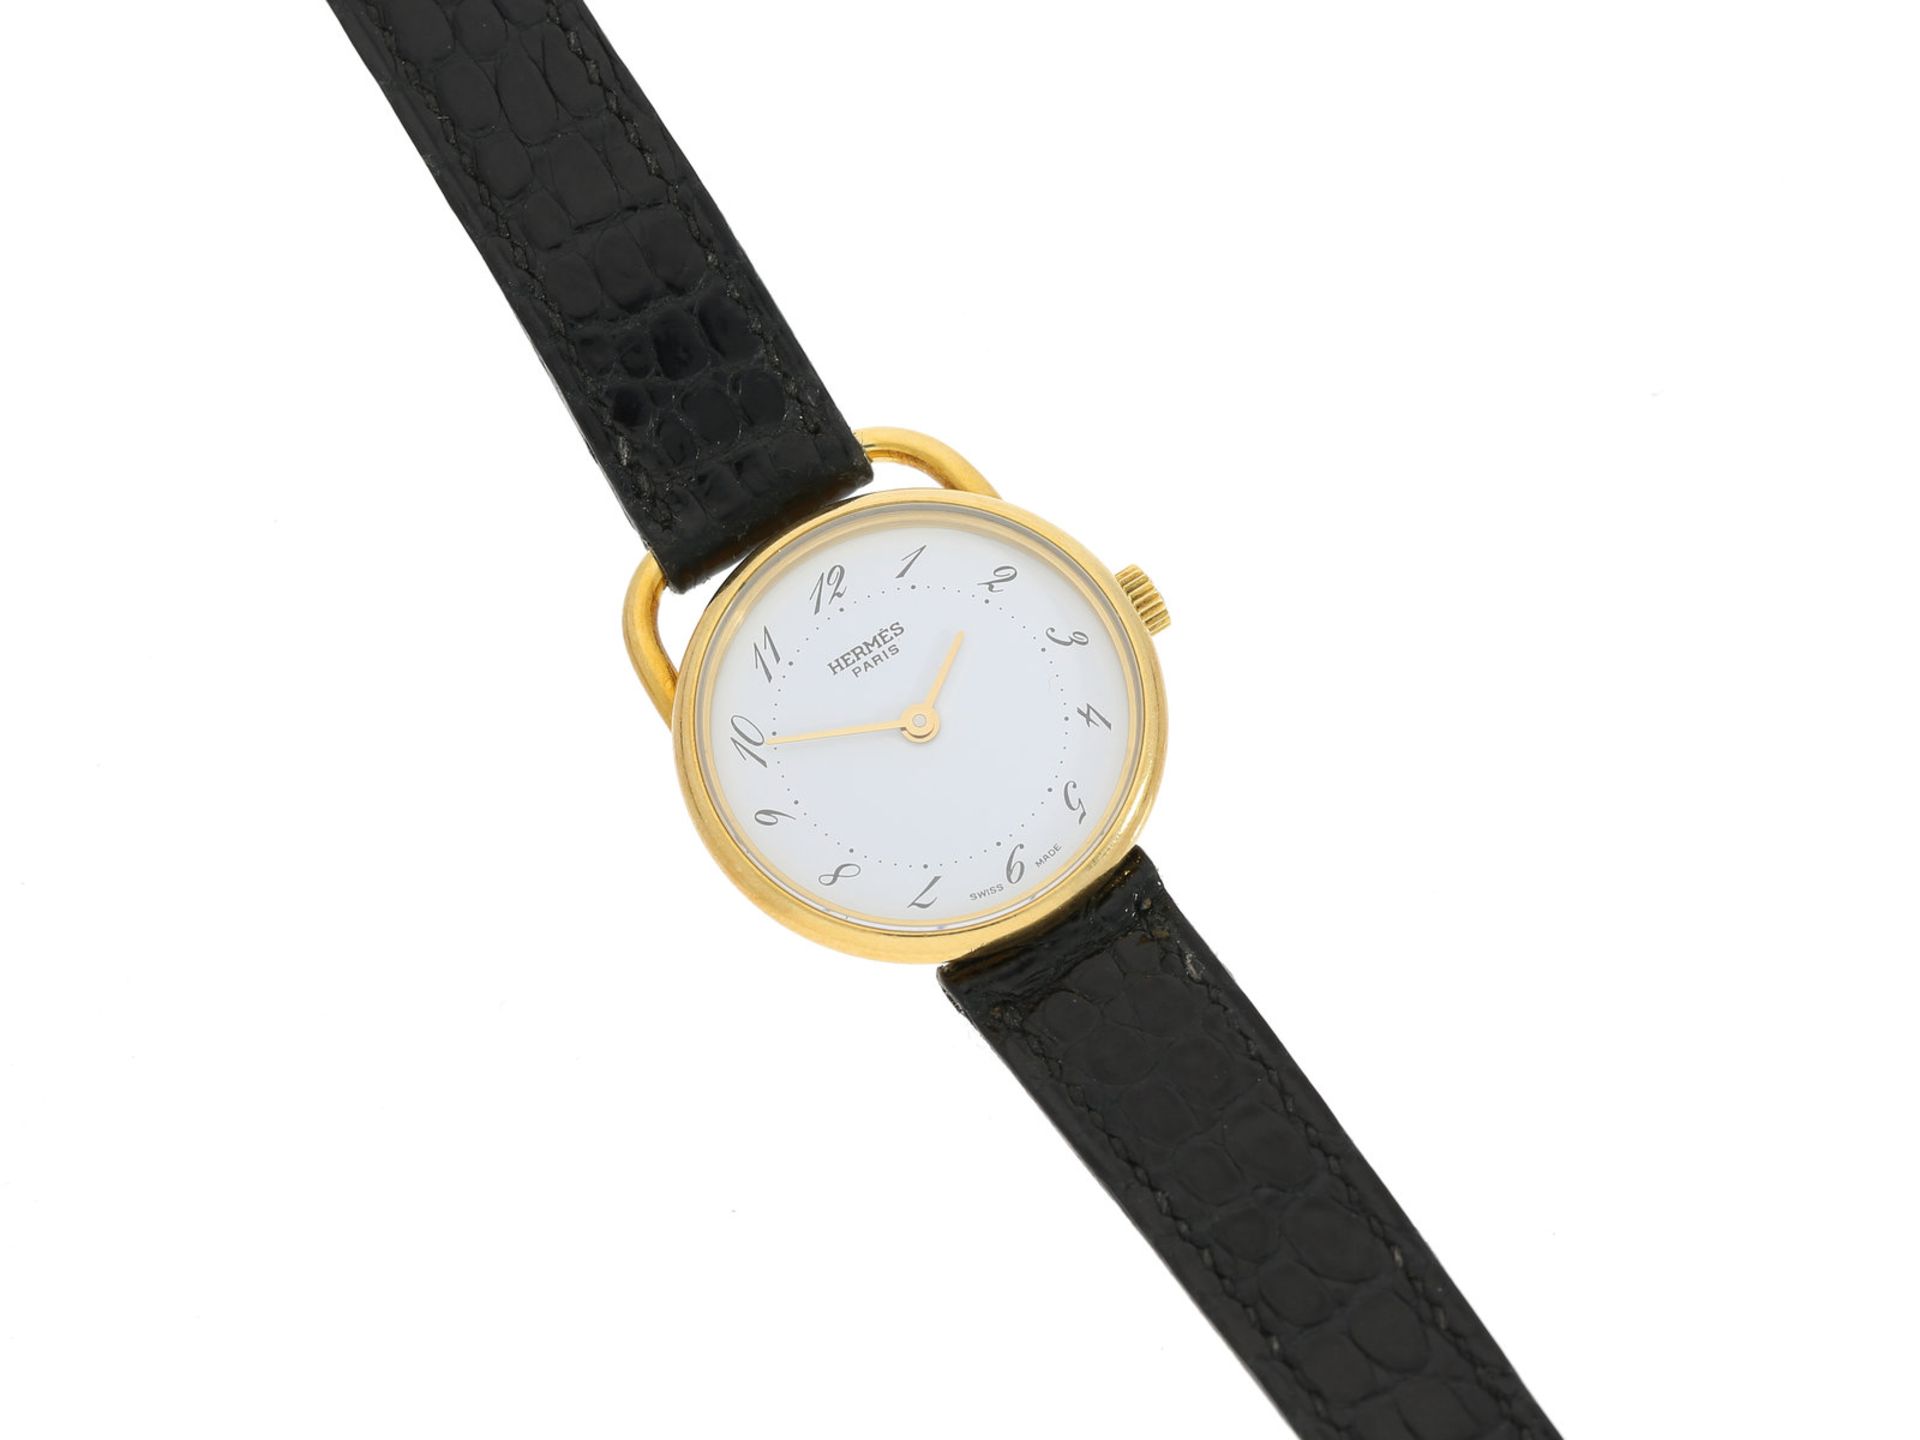 Armbanduhr: gesuchte Designeruhr von Hermes, "Lady Arceau" in 18K Gold, verkauft um 2000/2001Ca.